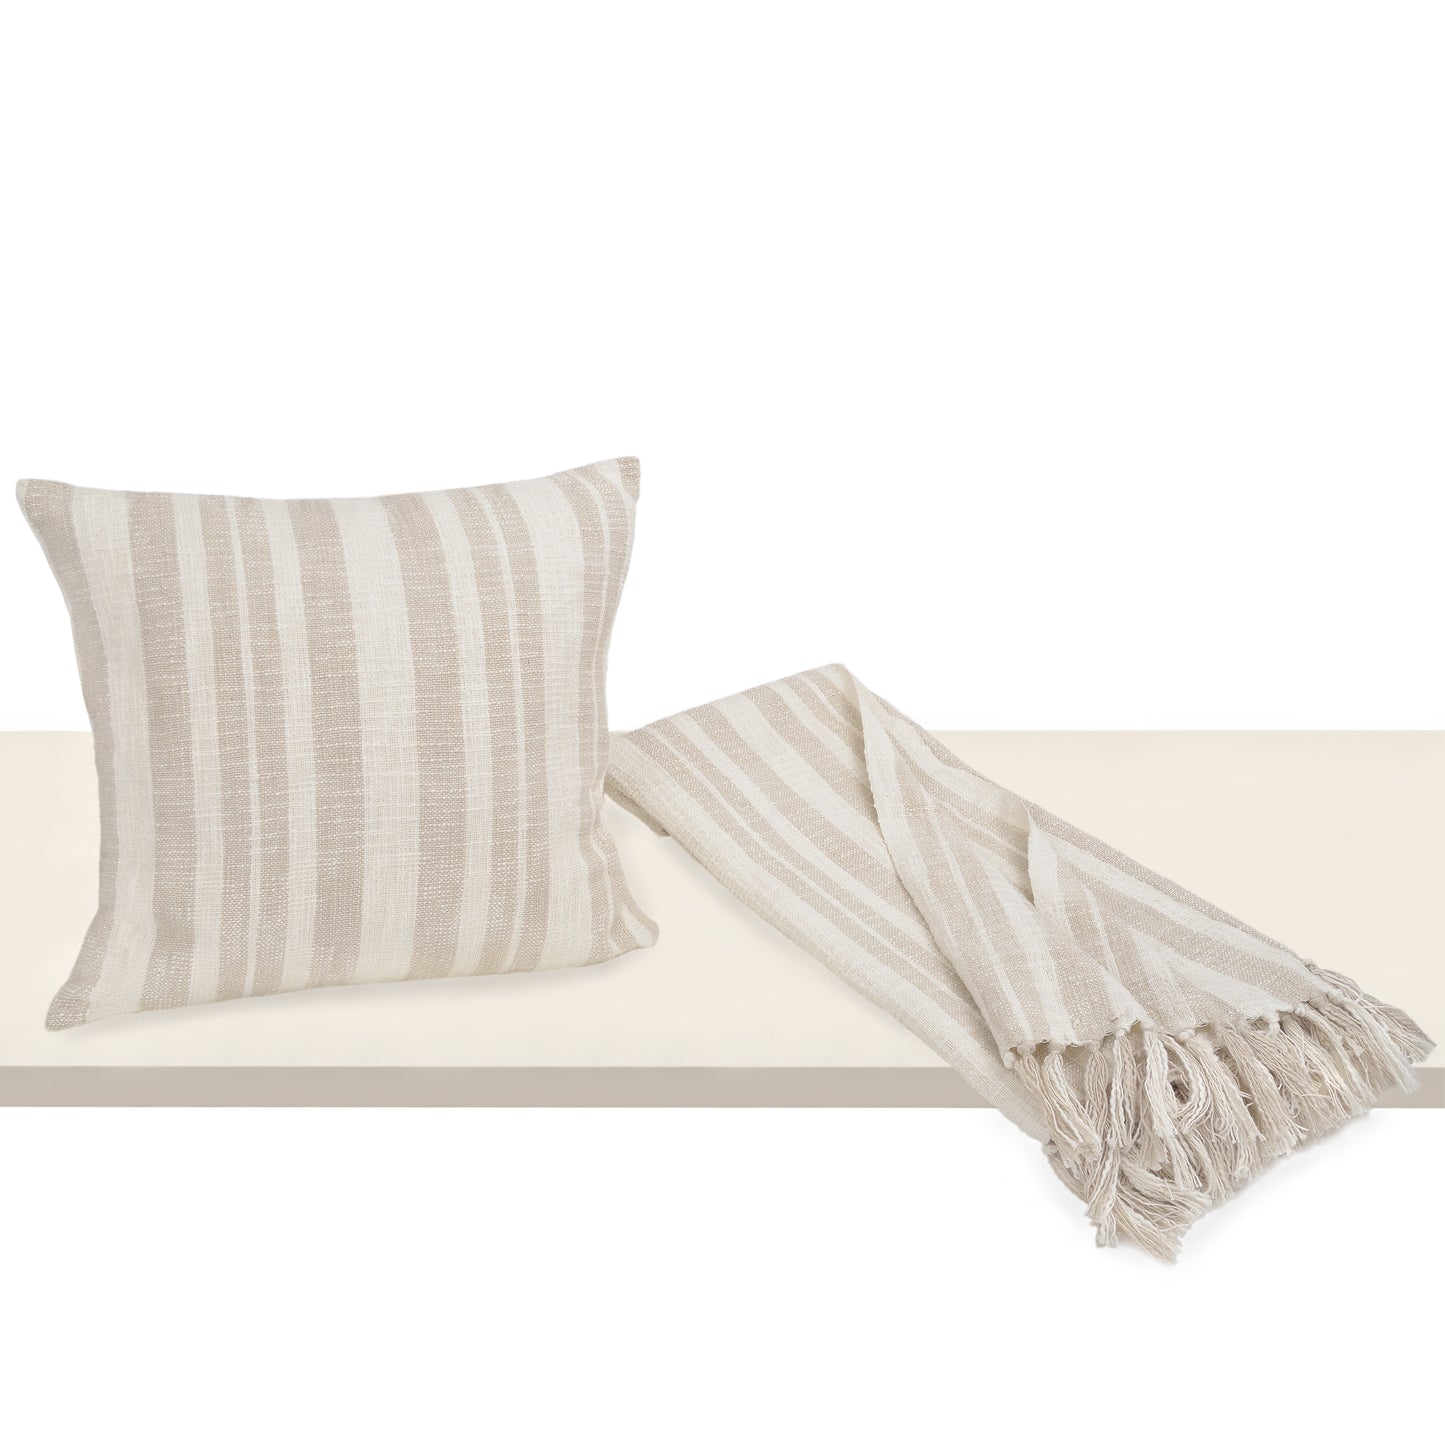 Cabana Pillows and Throw Set - Desert